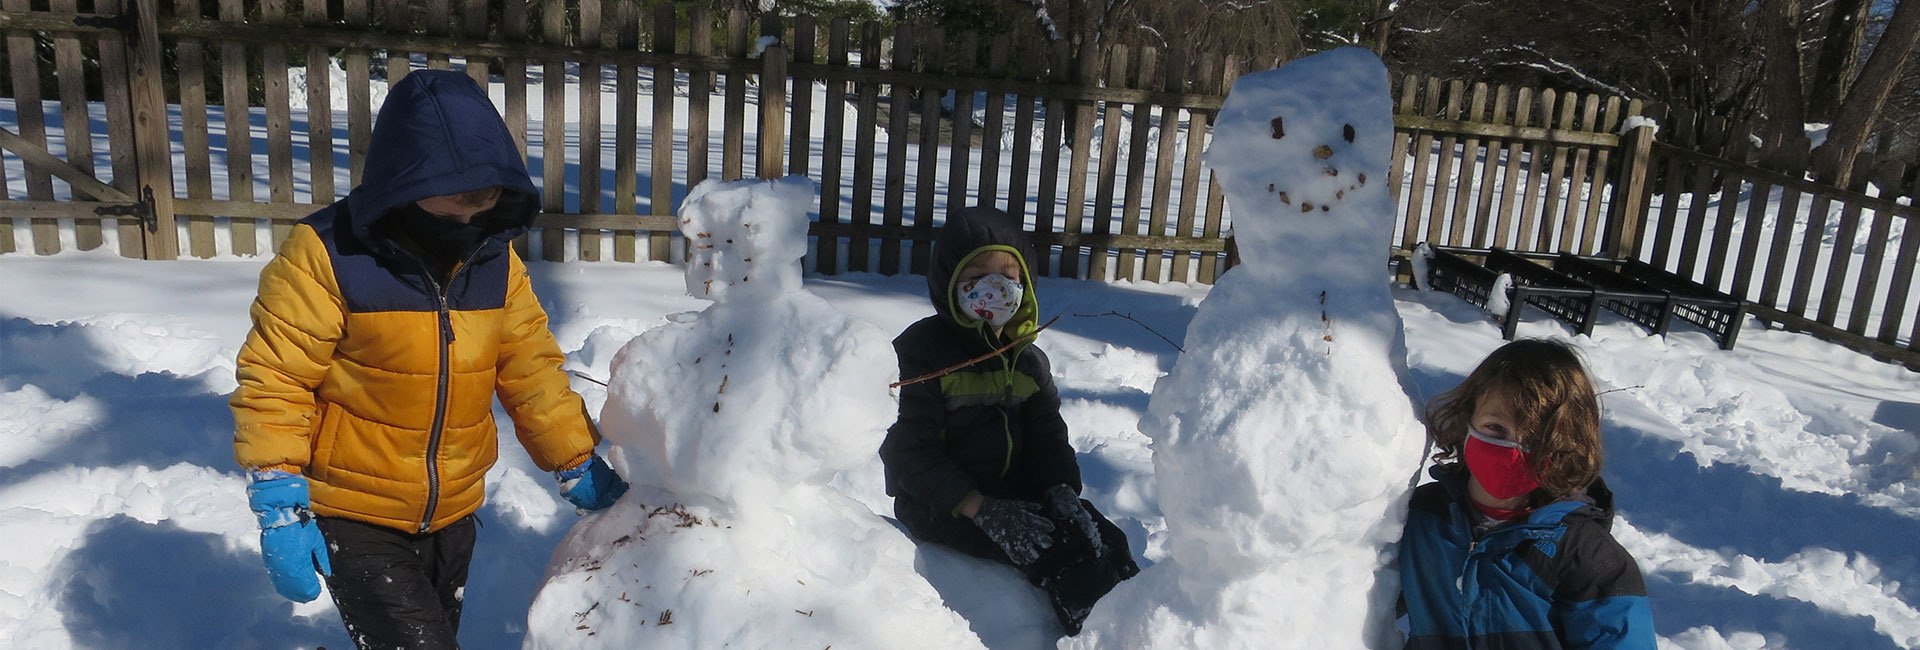 children building snowmen